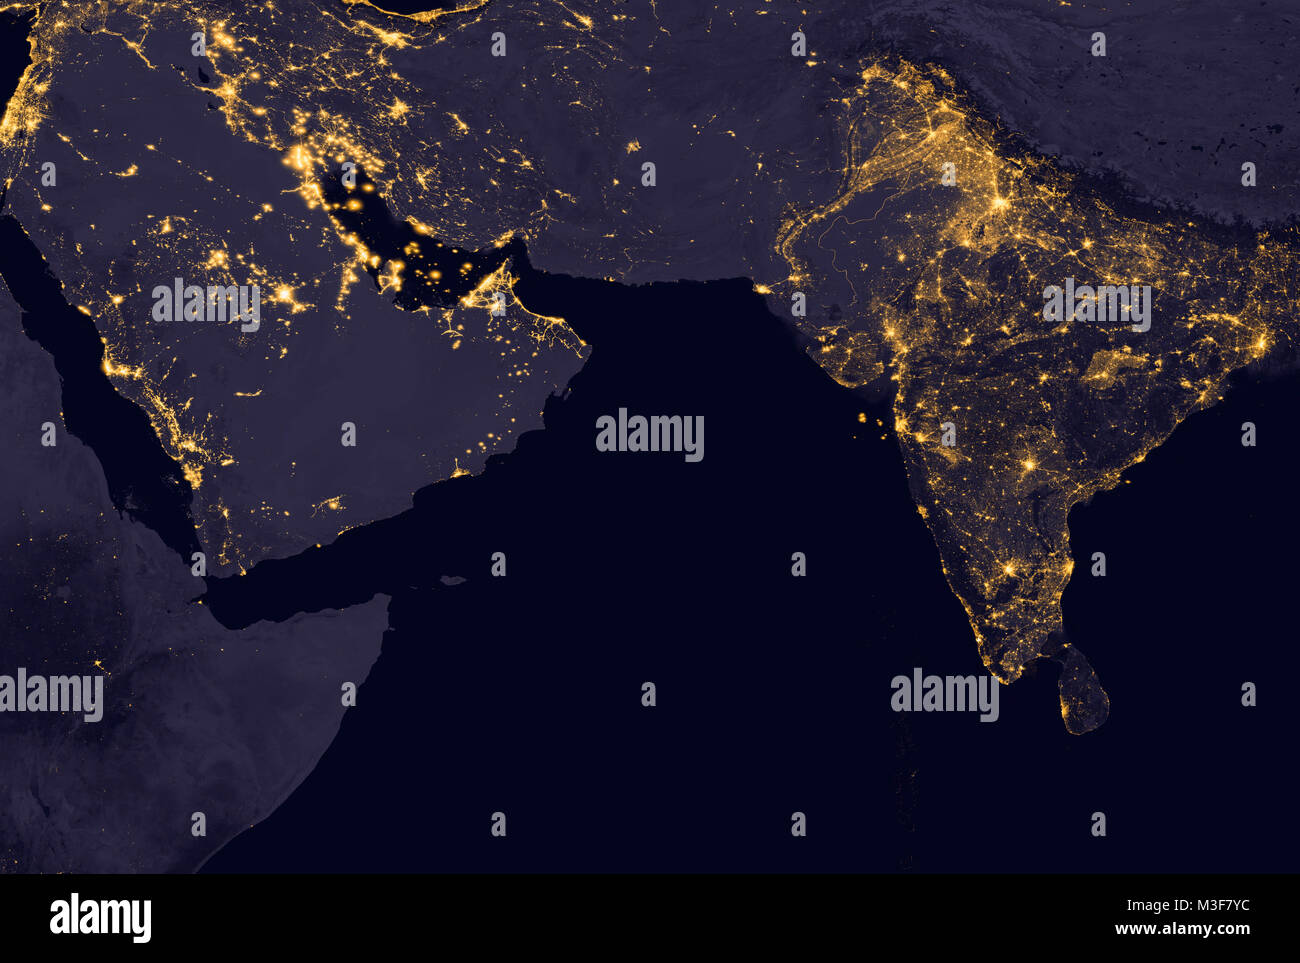 Indien und Mittlerer Osten leuchtet bei Nacht, weil es so aussieht, als aus dem Weltraum. Elemente dieses Bild sind von der NASA eingerichtet. Stockfoto